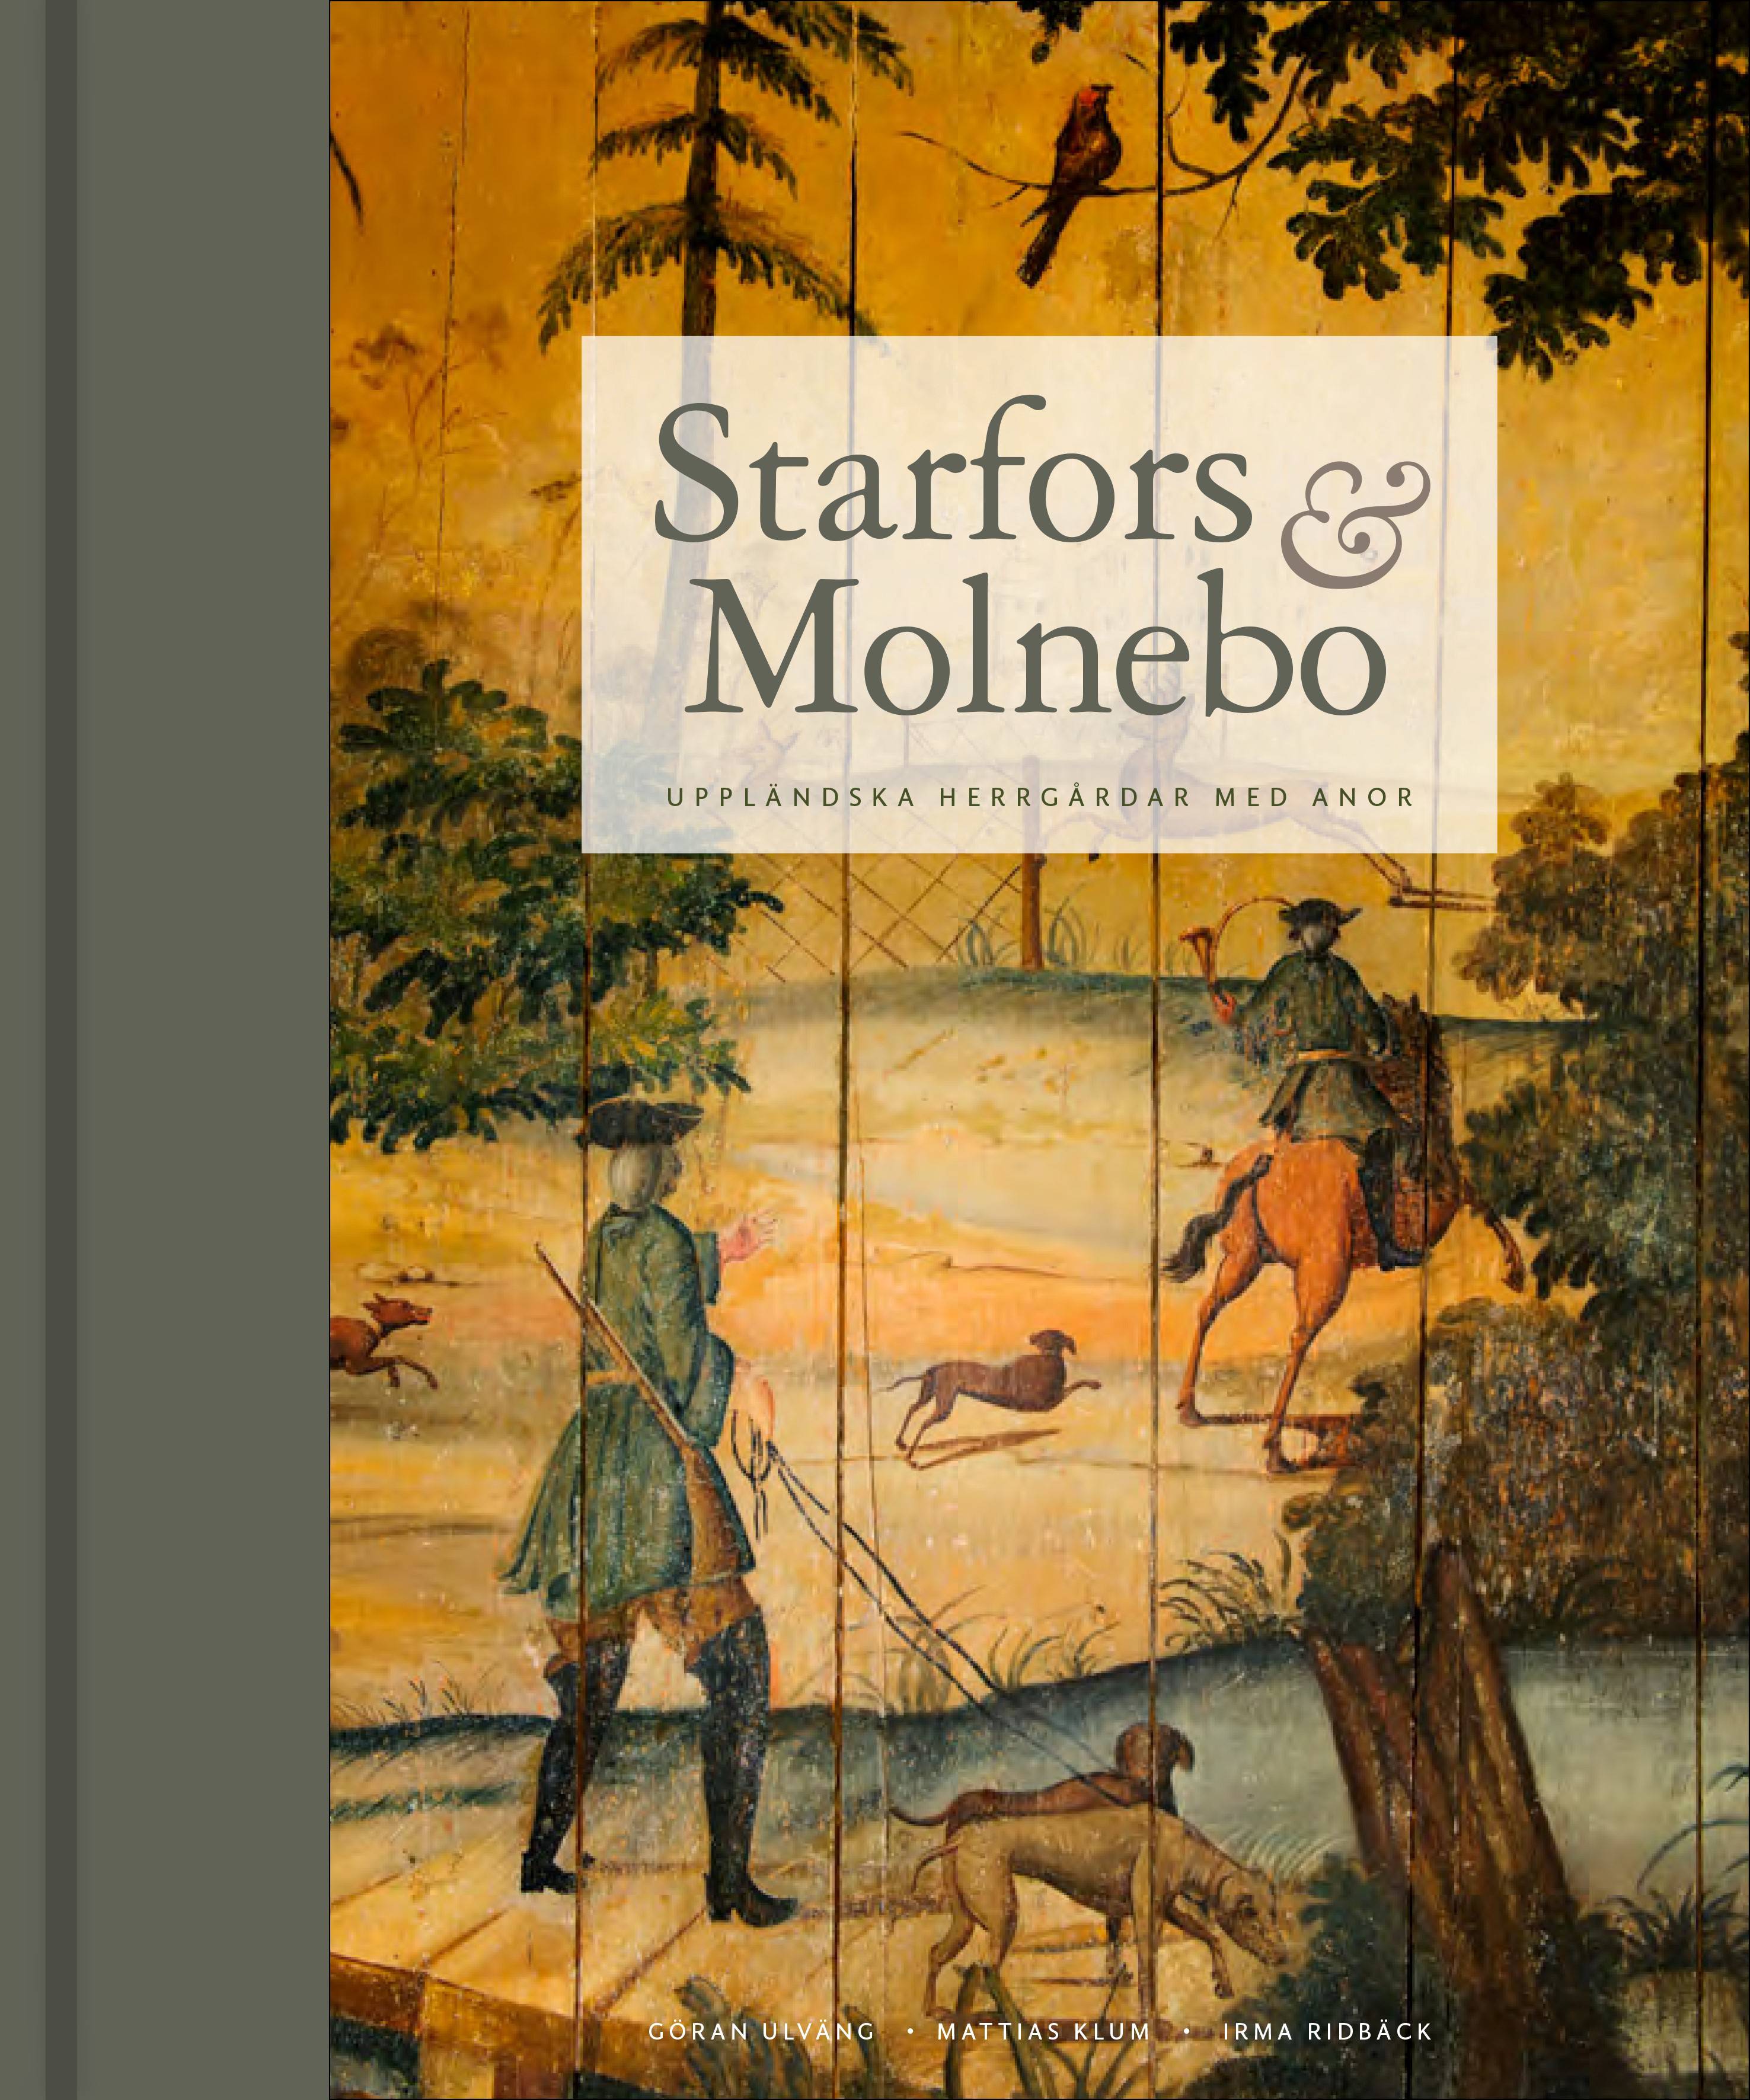 Starfors & Molnebo : Uppländska herrgårdar med anor